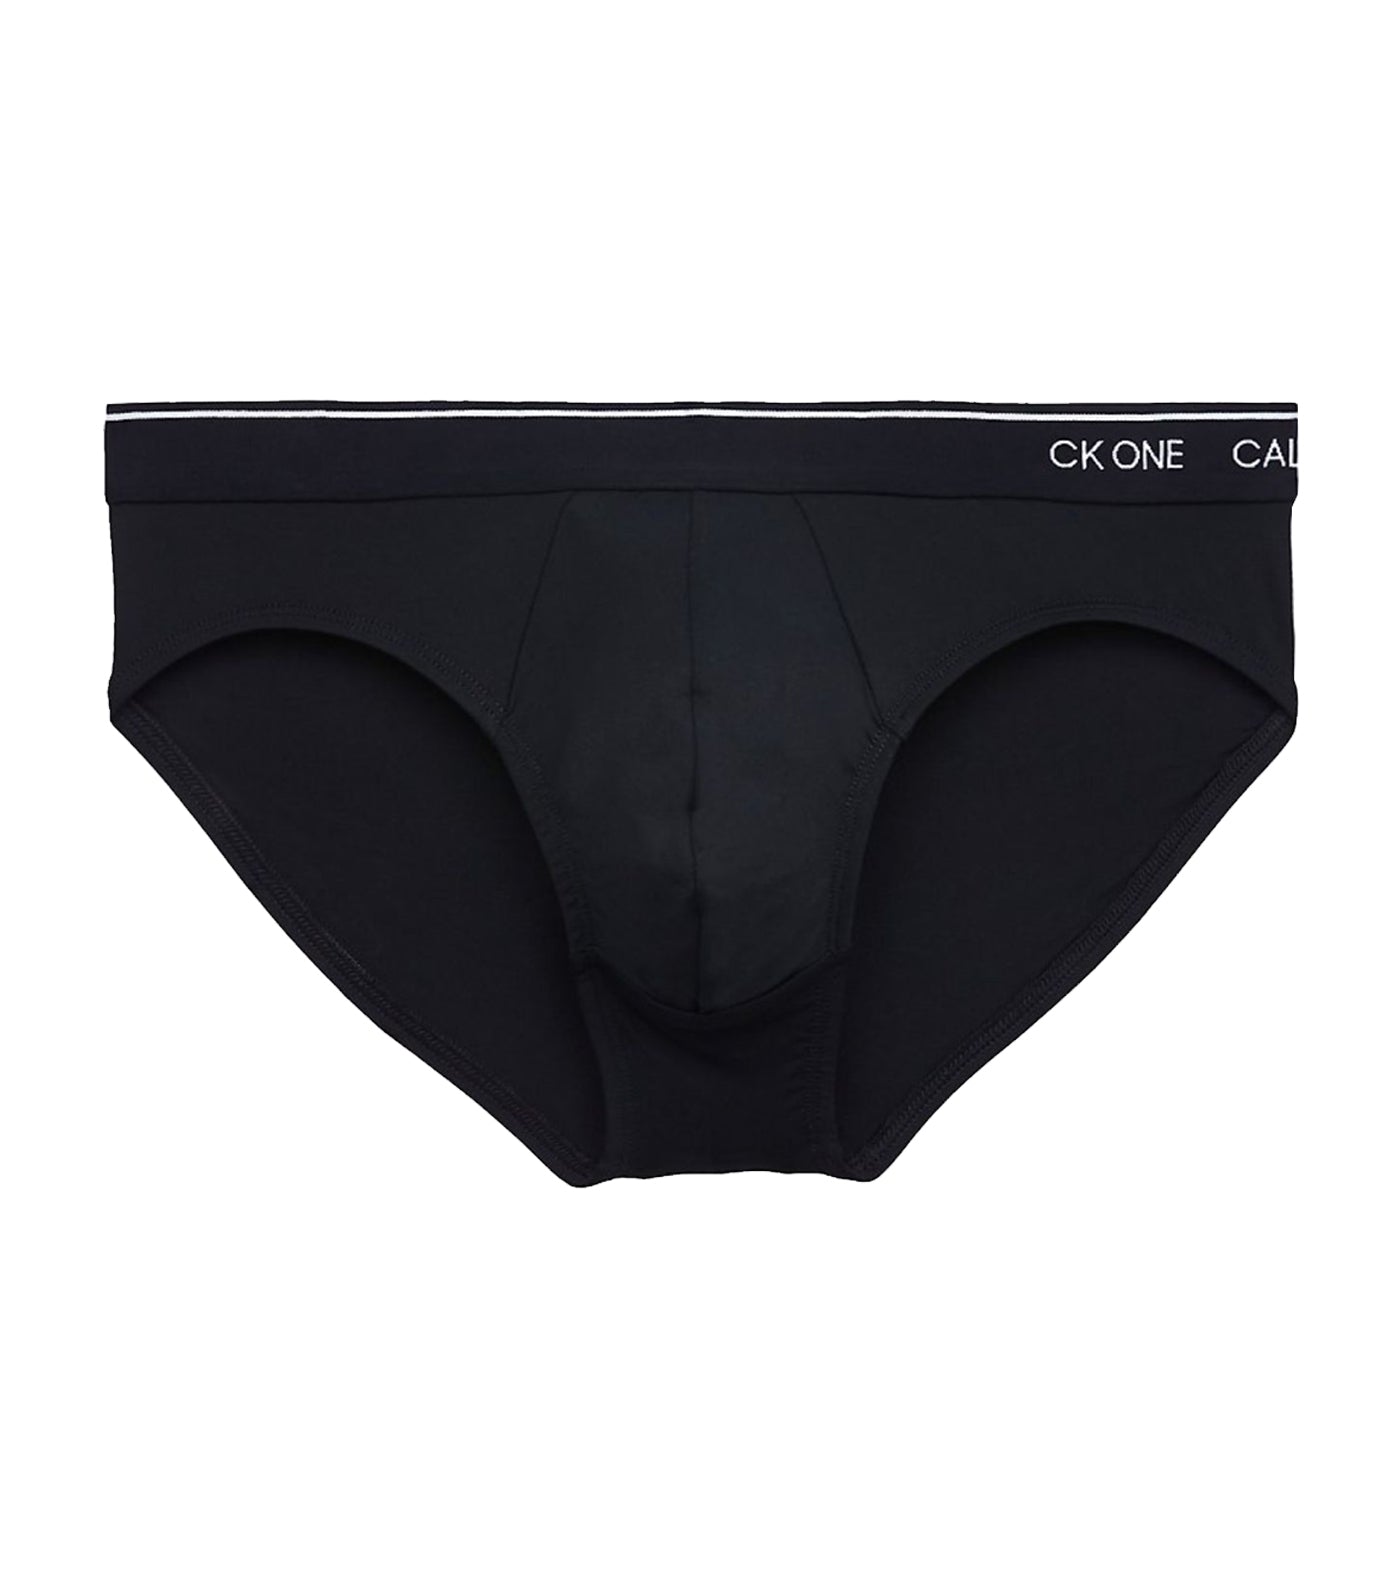 Calvin Klein Underwear CK One Micro Low Rise Trunk Black